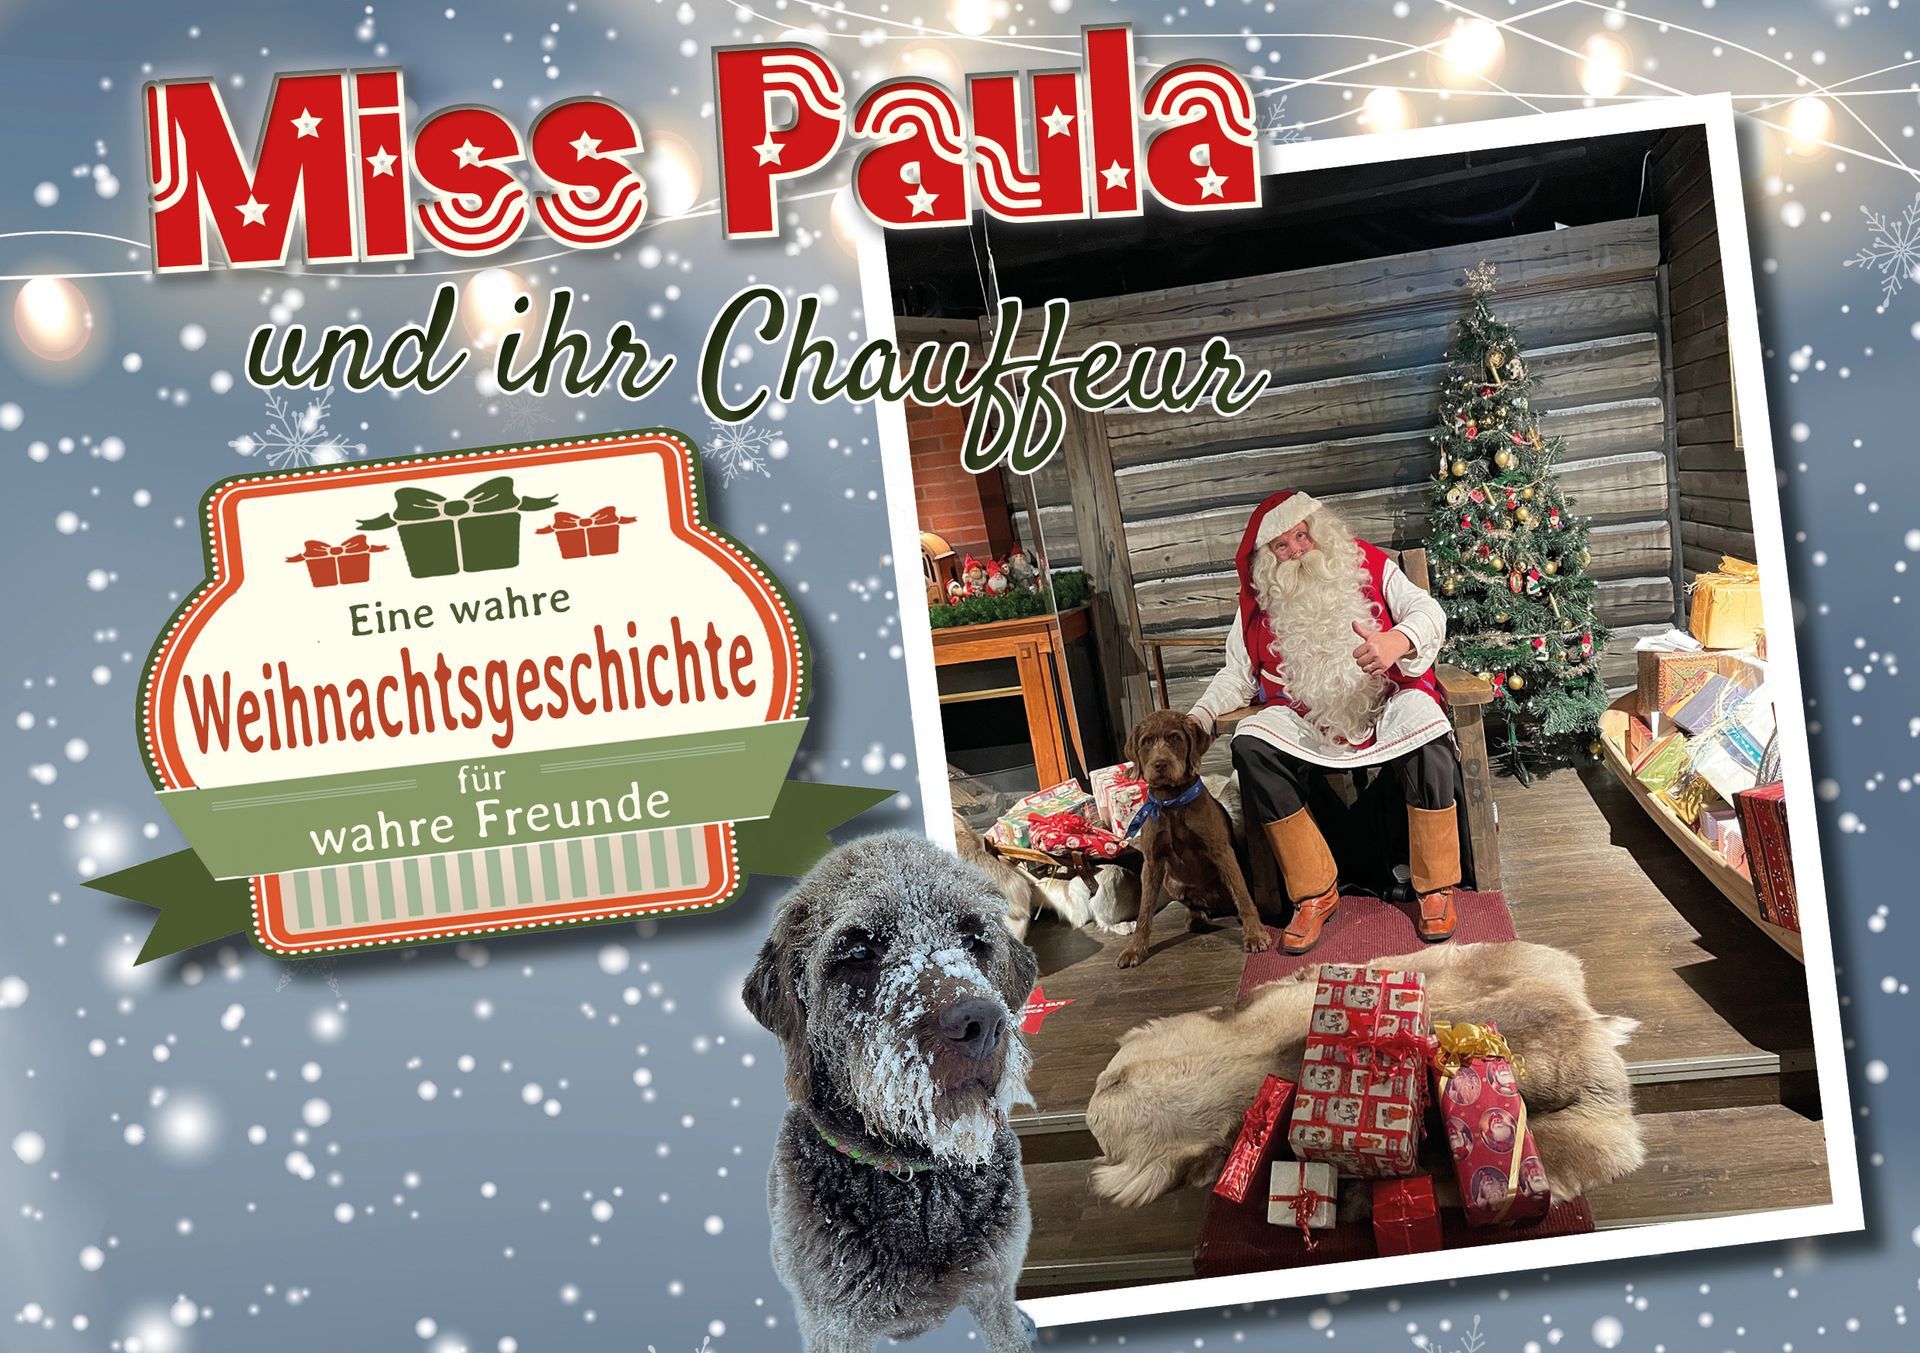 Miss Paula und ihr Chauffeur - eine wahre Weihnachtsgeschichte für wahre Freunde